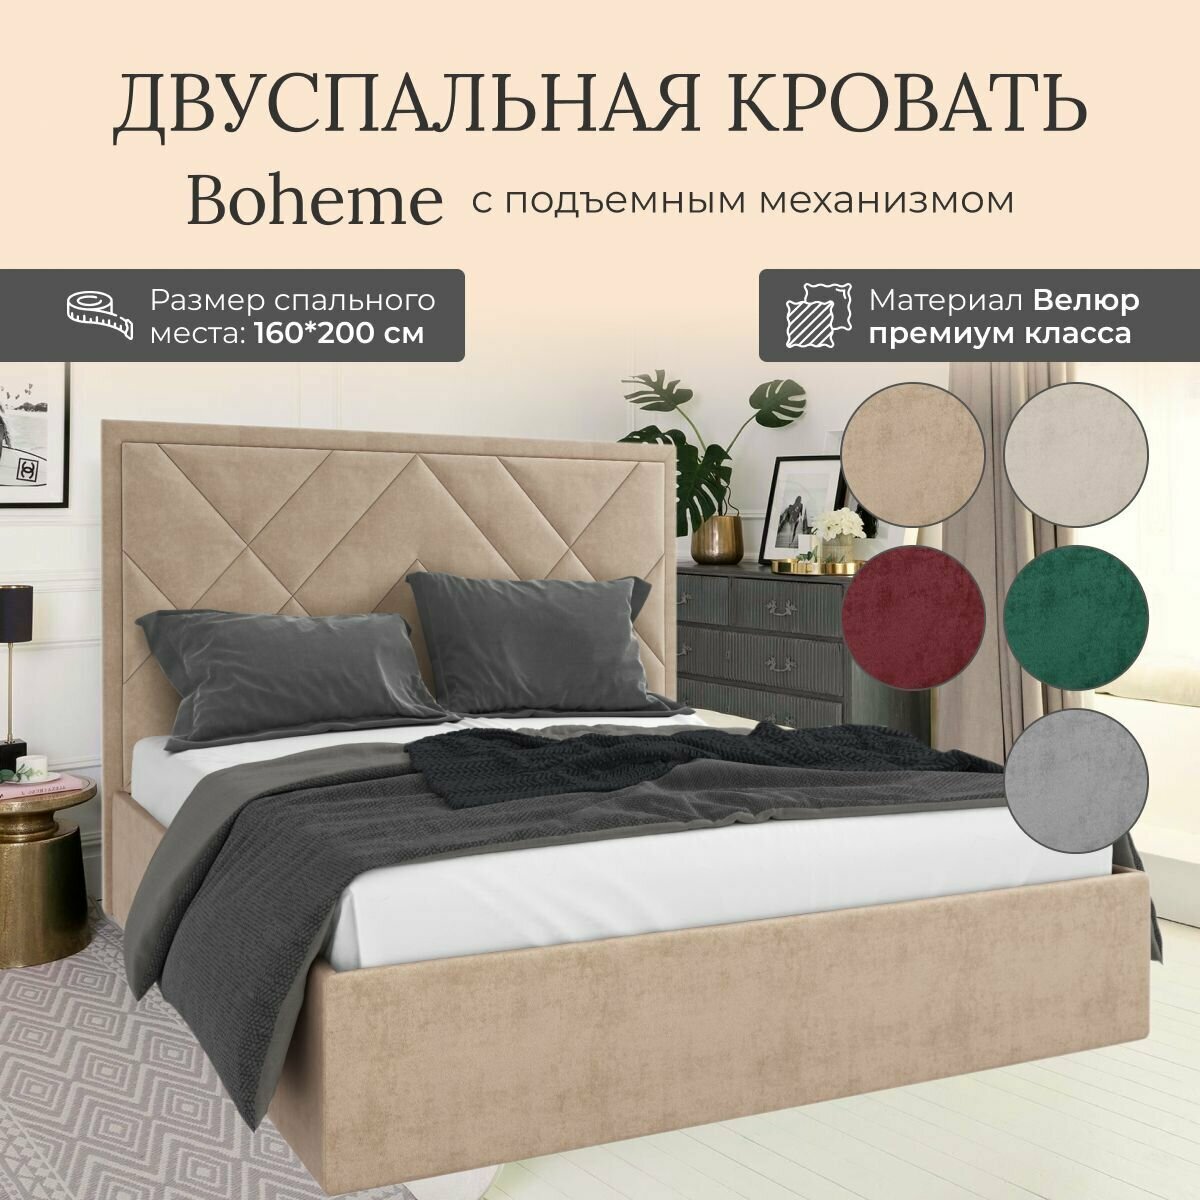 Кровать с подъемным механизмом Luxson Boheme двуспальная размер 160х200